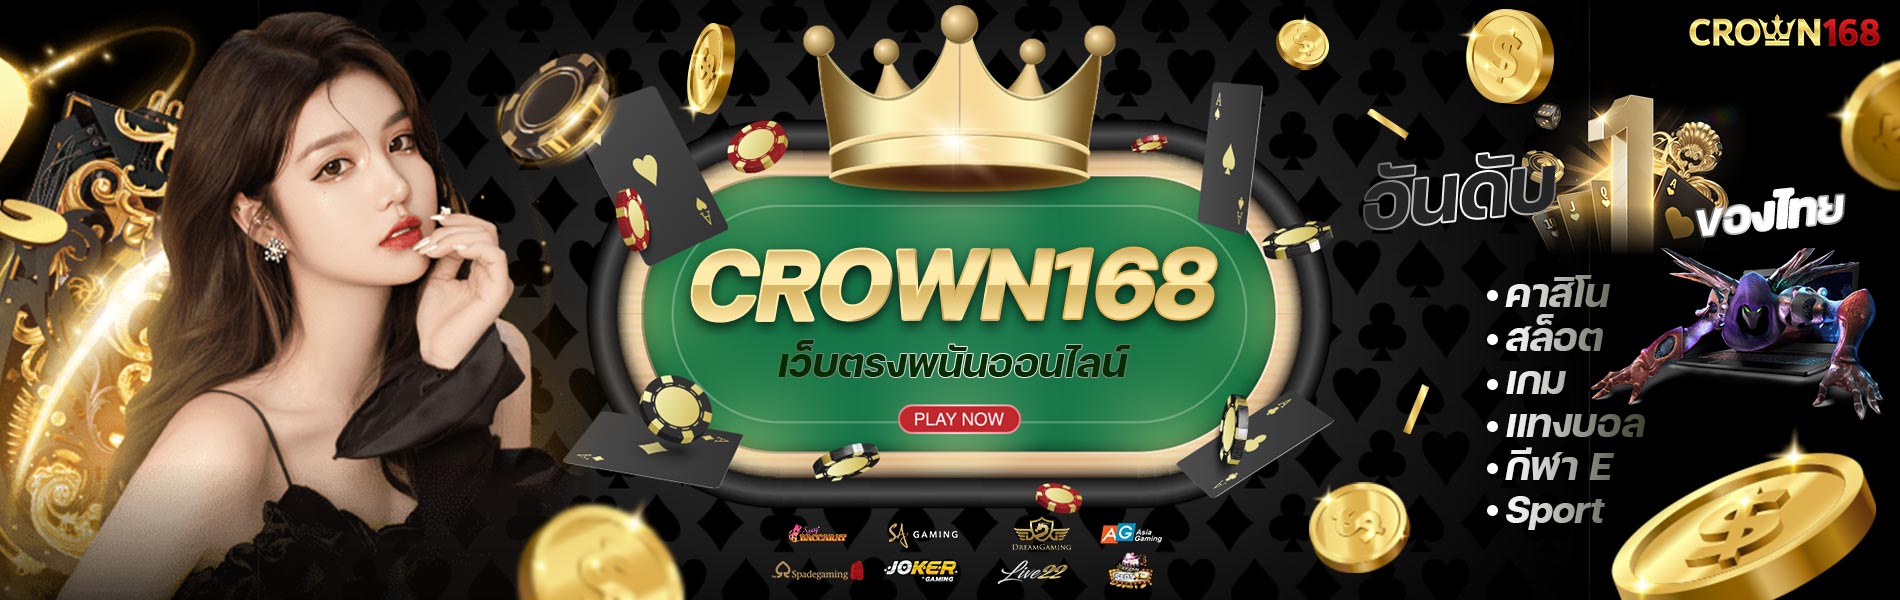 Crown168